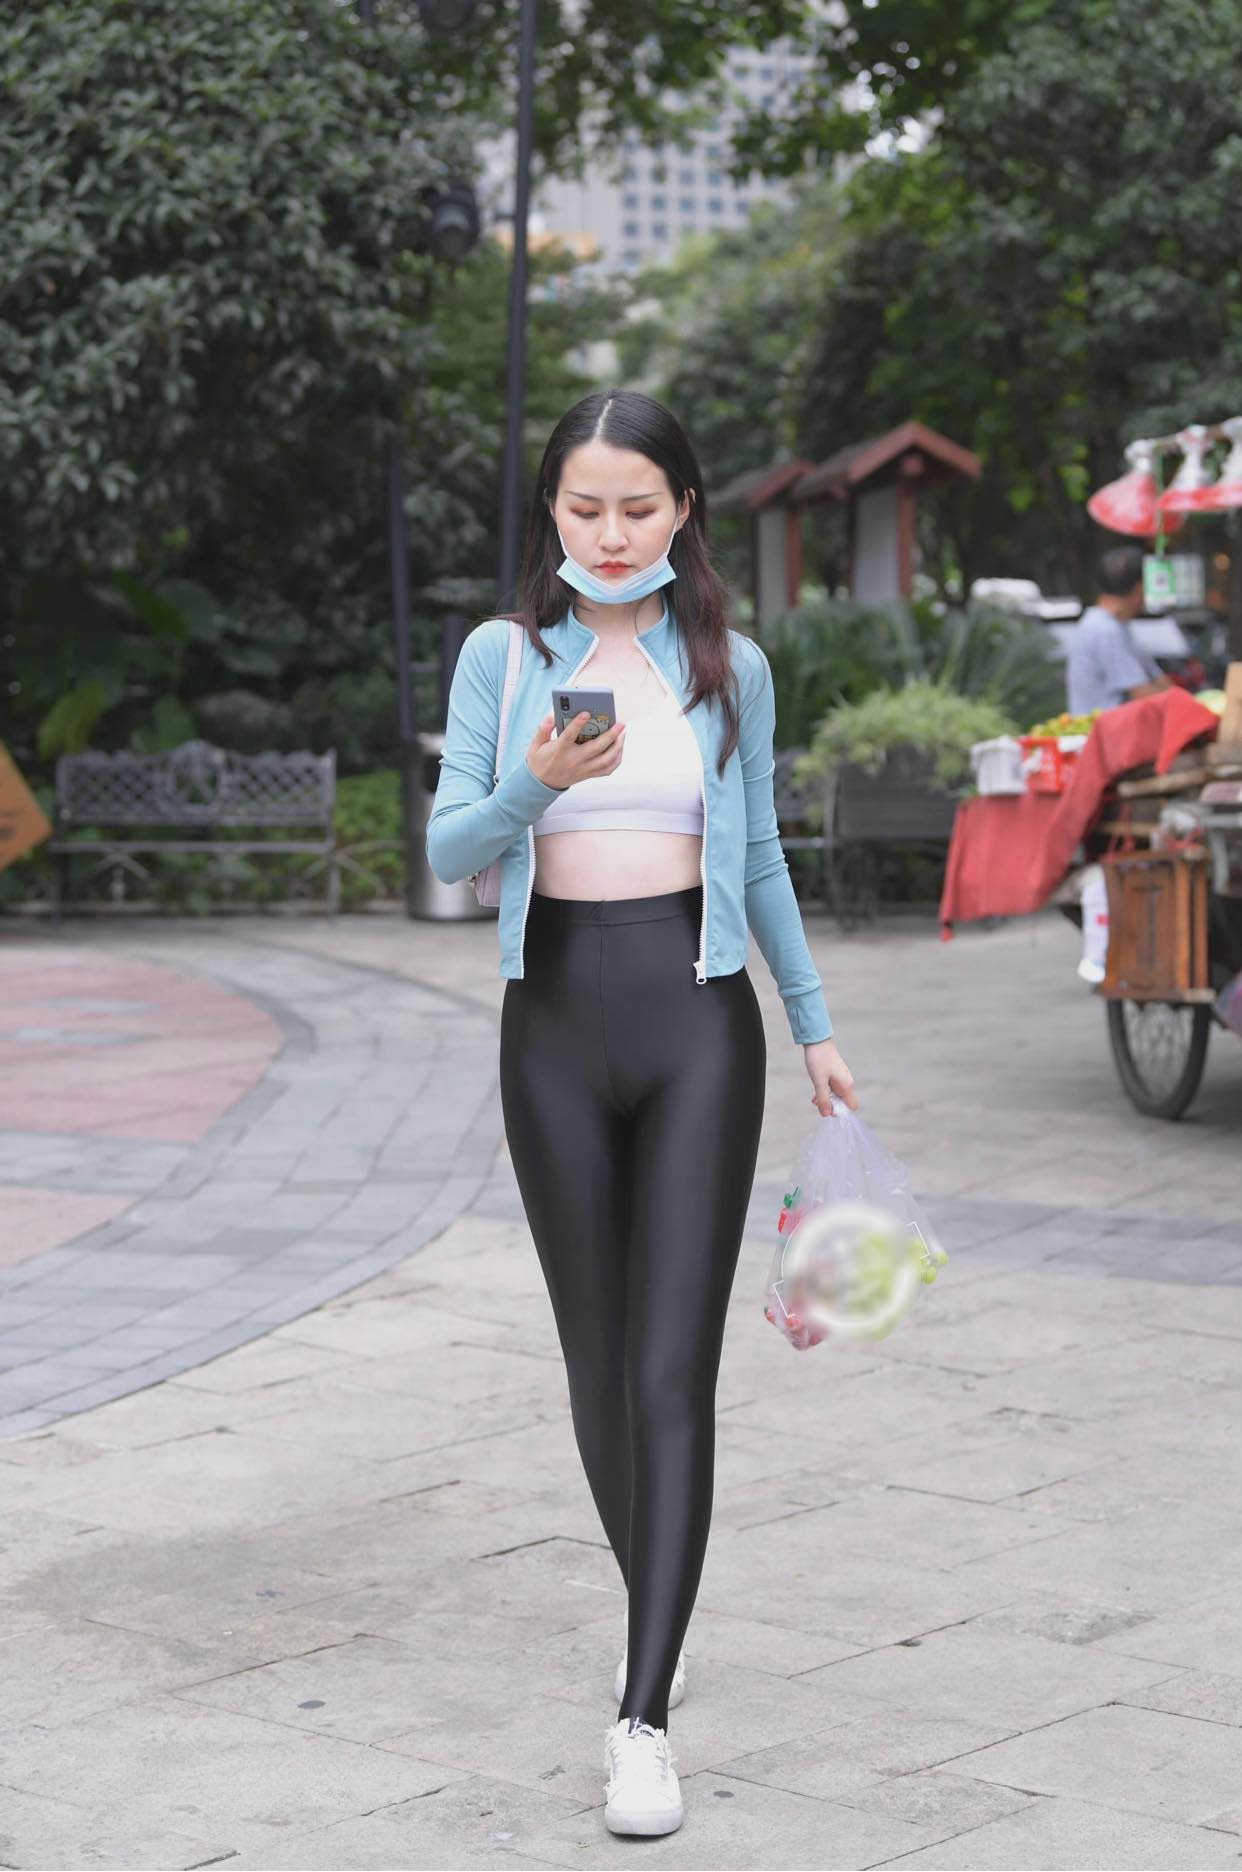 Người Đẹp Trung Quốc Nổi Bật Giữa Phố Vì Mặc Quần Legging Như Vẽ Lên Thân